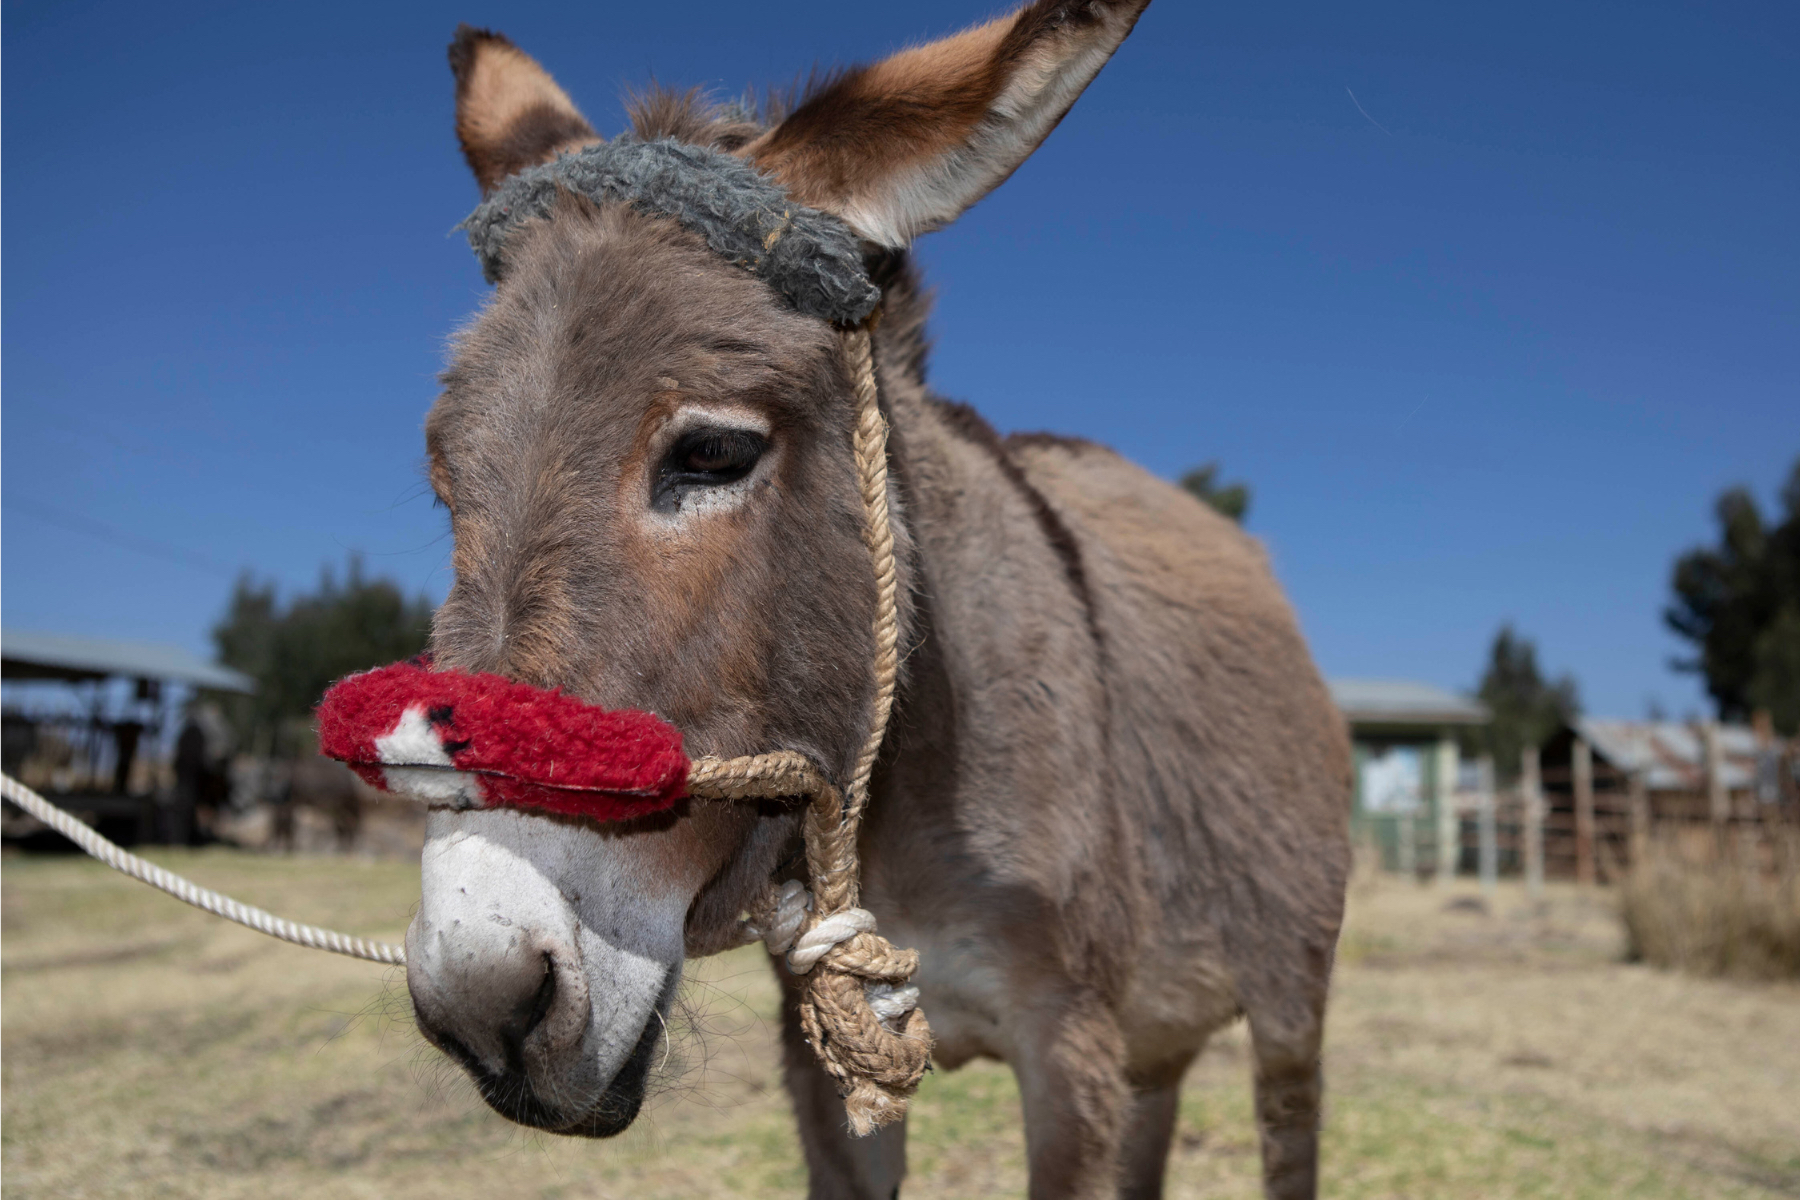 How SPANA vets saved Bulla the donkey from lameness SPANA Australia